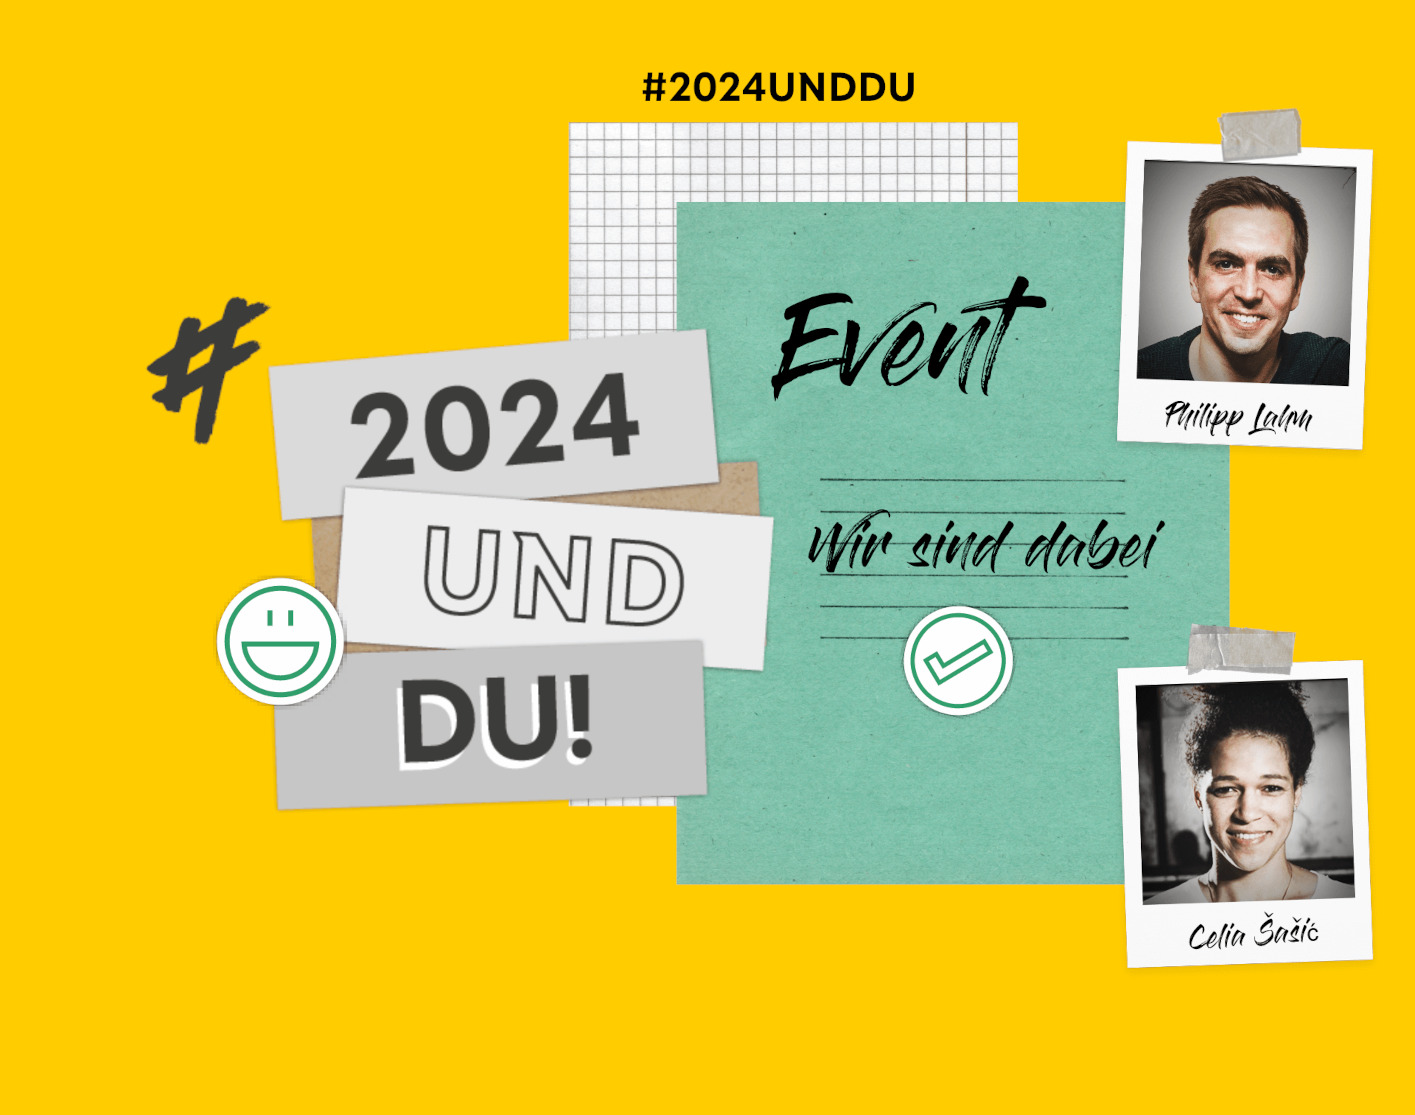 Grafik mit dem Fotos von Celia Šašić und Philipp Lahm, dem Logo des DFB und der DSEE. Text: #2024 und Du!Event! Wir sind dabei!